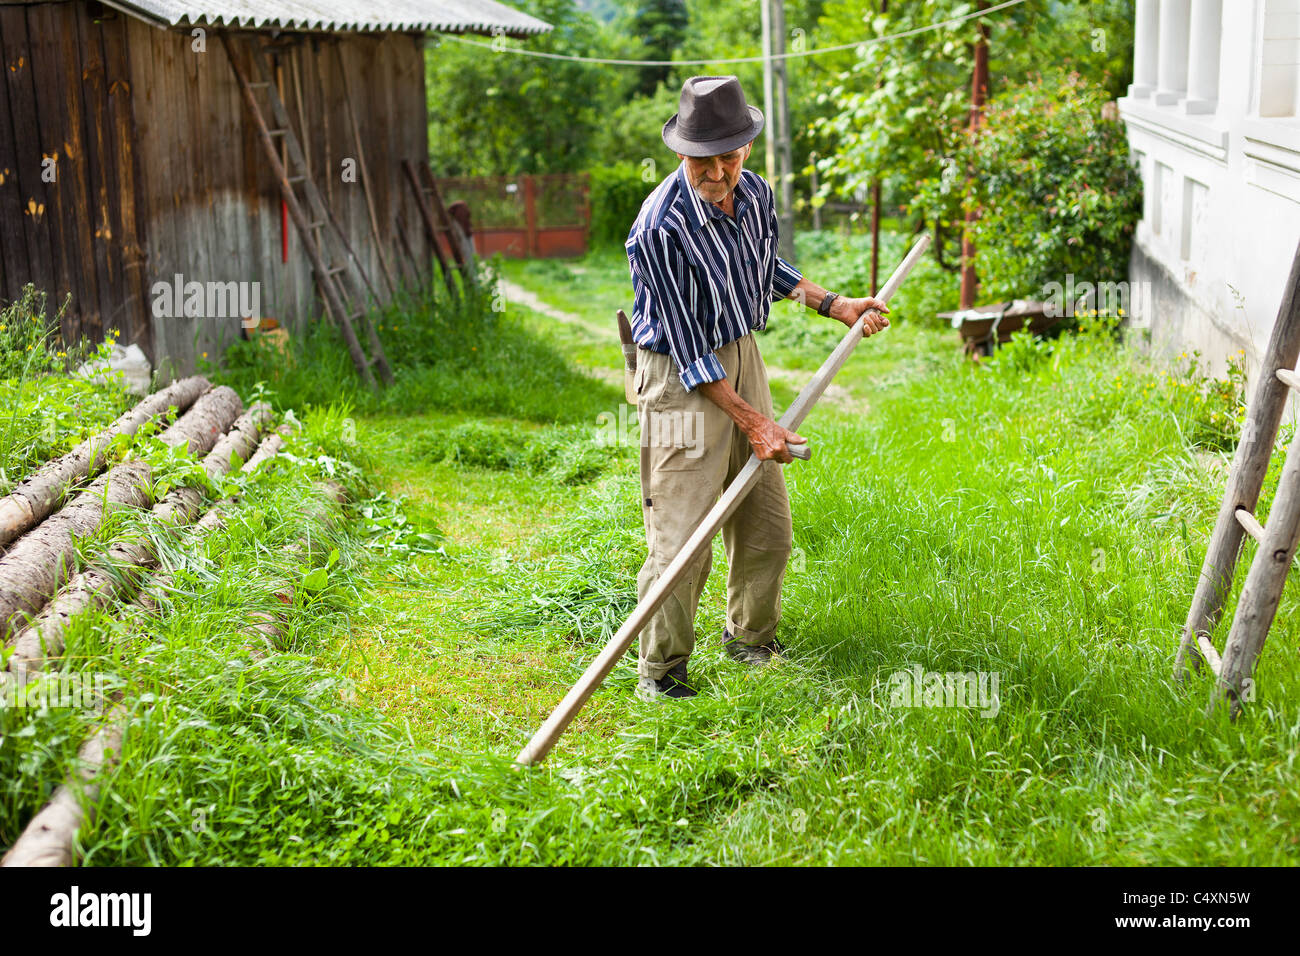 Altos agricultor usando guadaña para segar el césped tradicionalmente Foto de stock